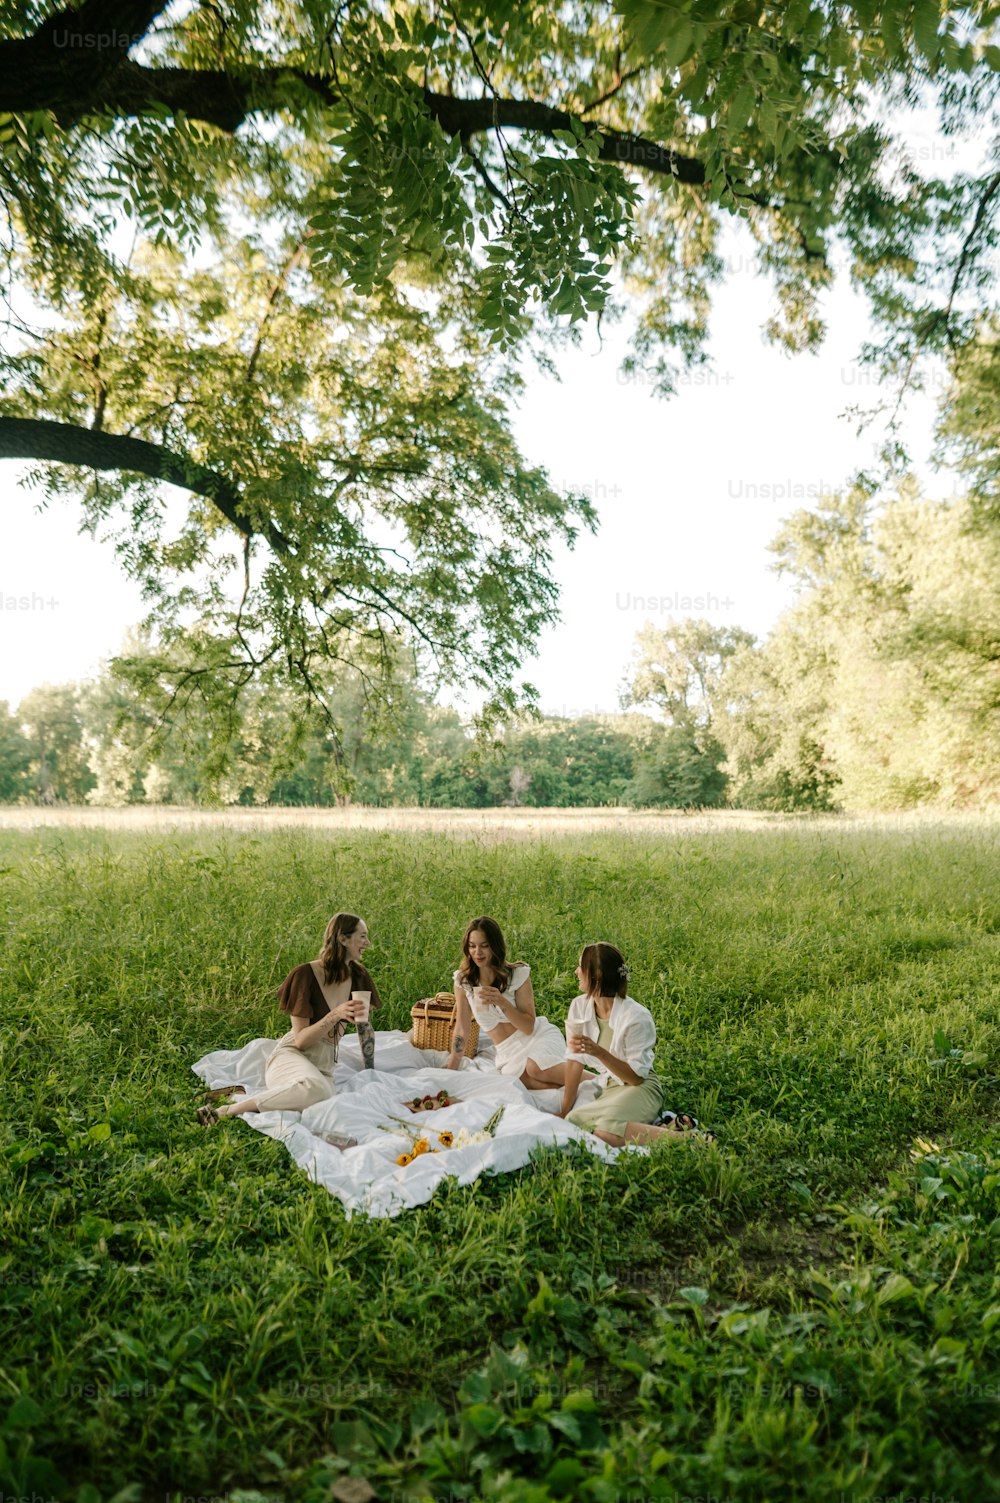 무성한 녹색 들��판 위에 앉아 있는 한 무리의 여성들